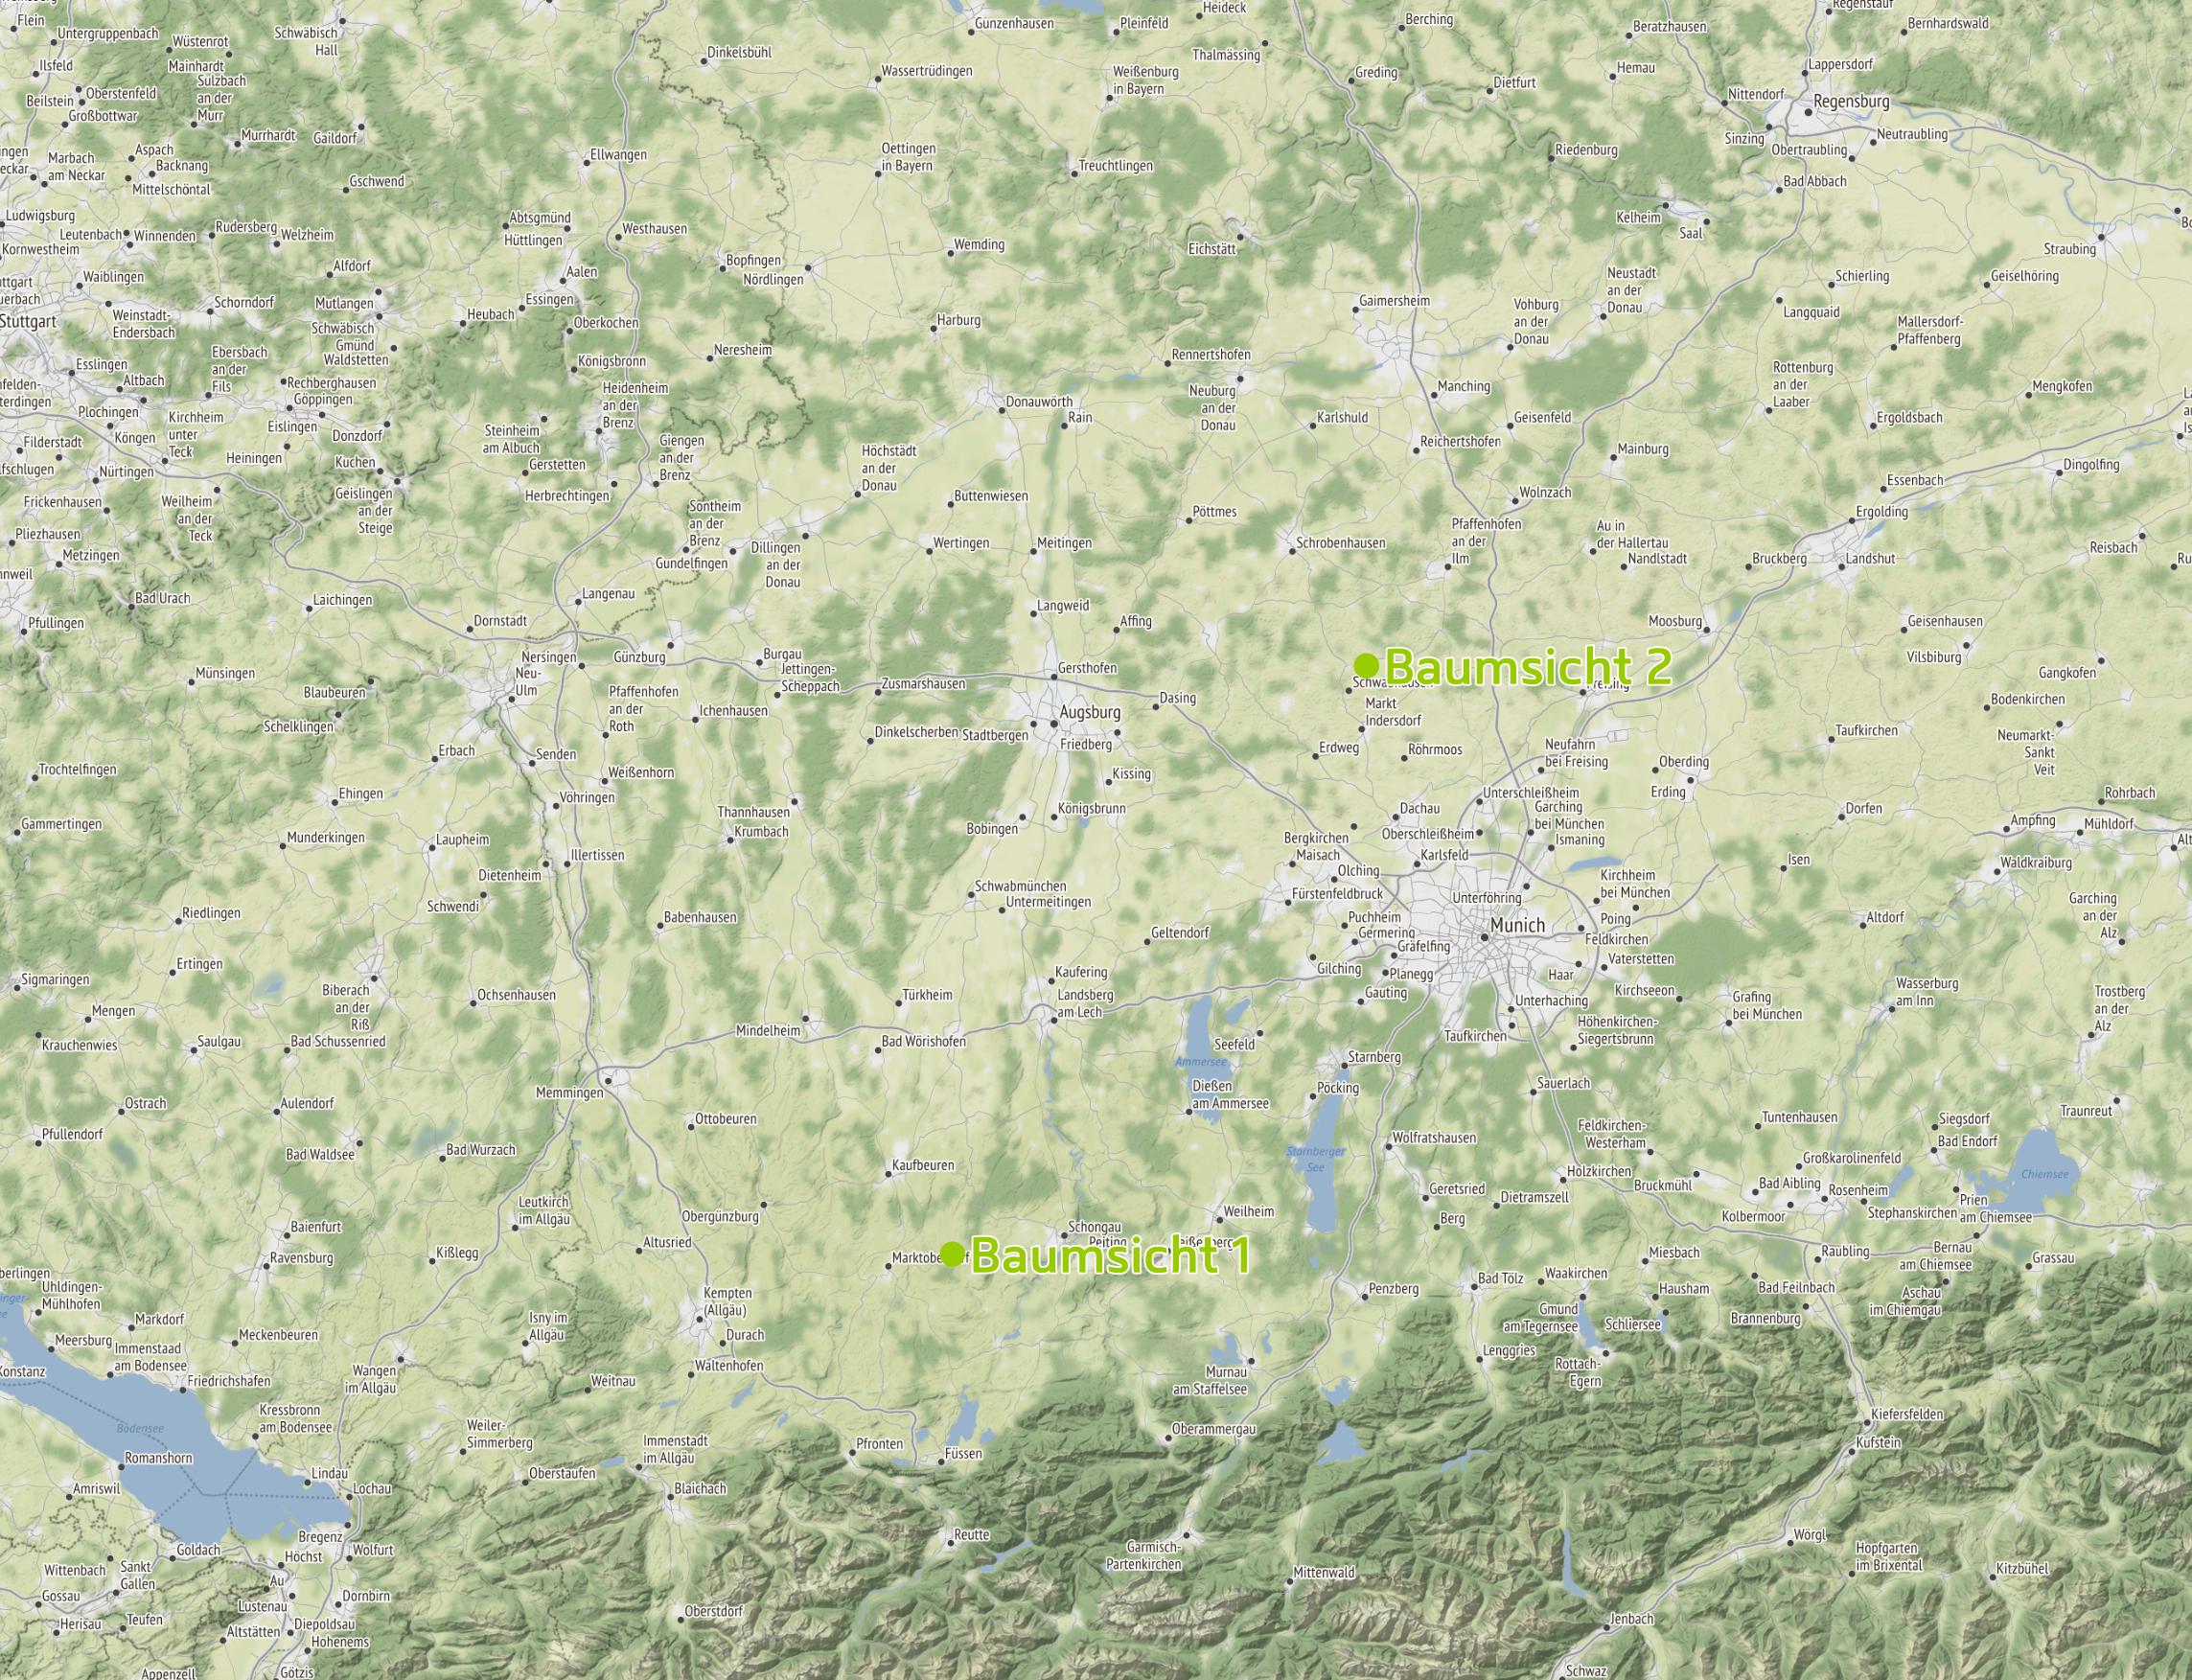 Arbeitsgebiet von Baumsicht: Bodensee, Augsbug, Ulm, München, Schwaben, Oberbayern, Niederbayern